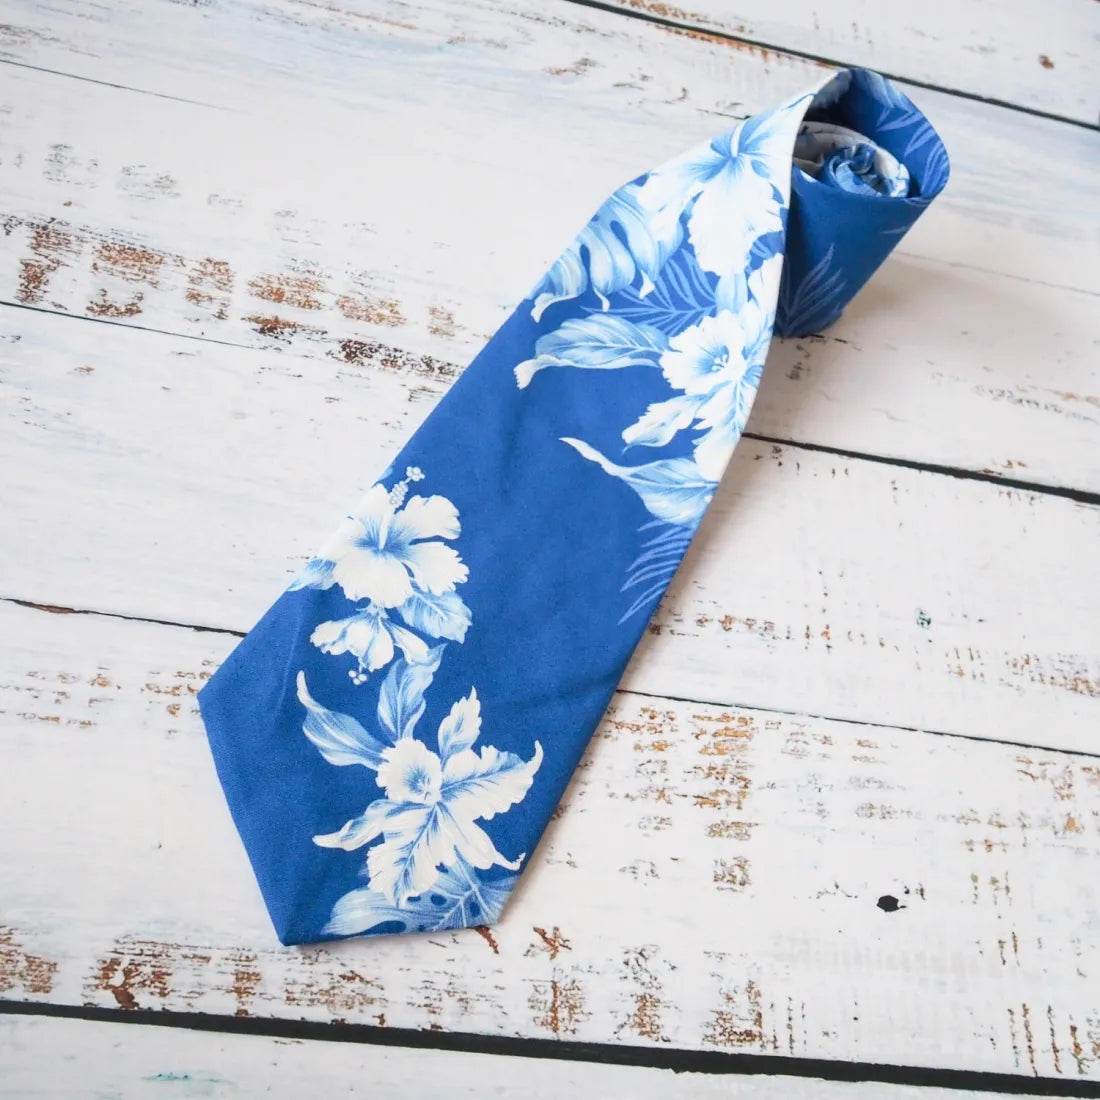 Kahaluu Blue Hawaiian Necktie - Made In Hawaii